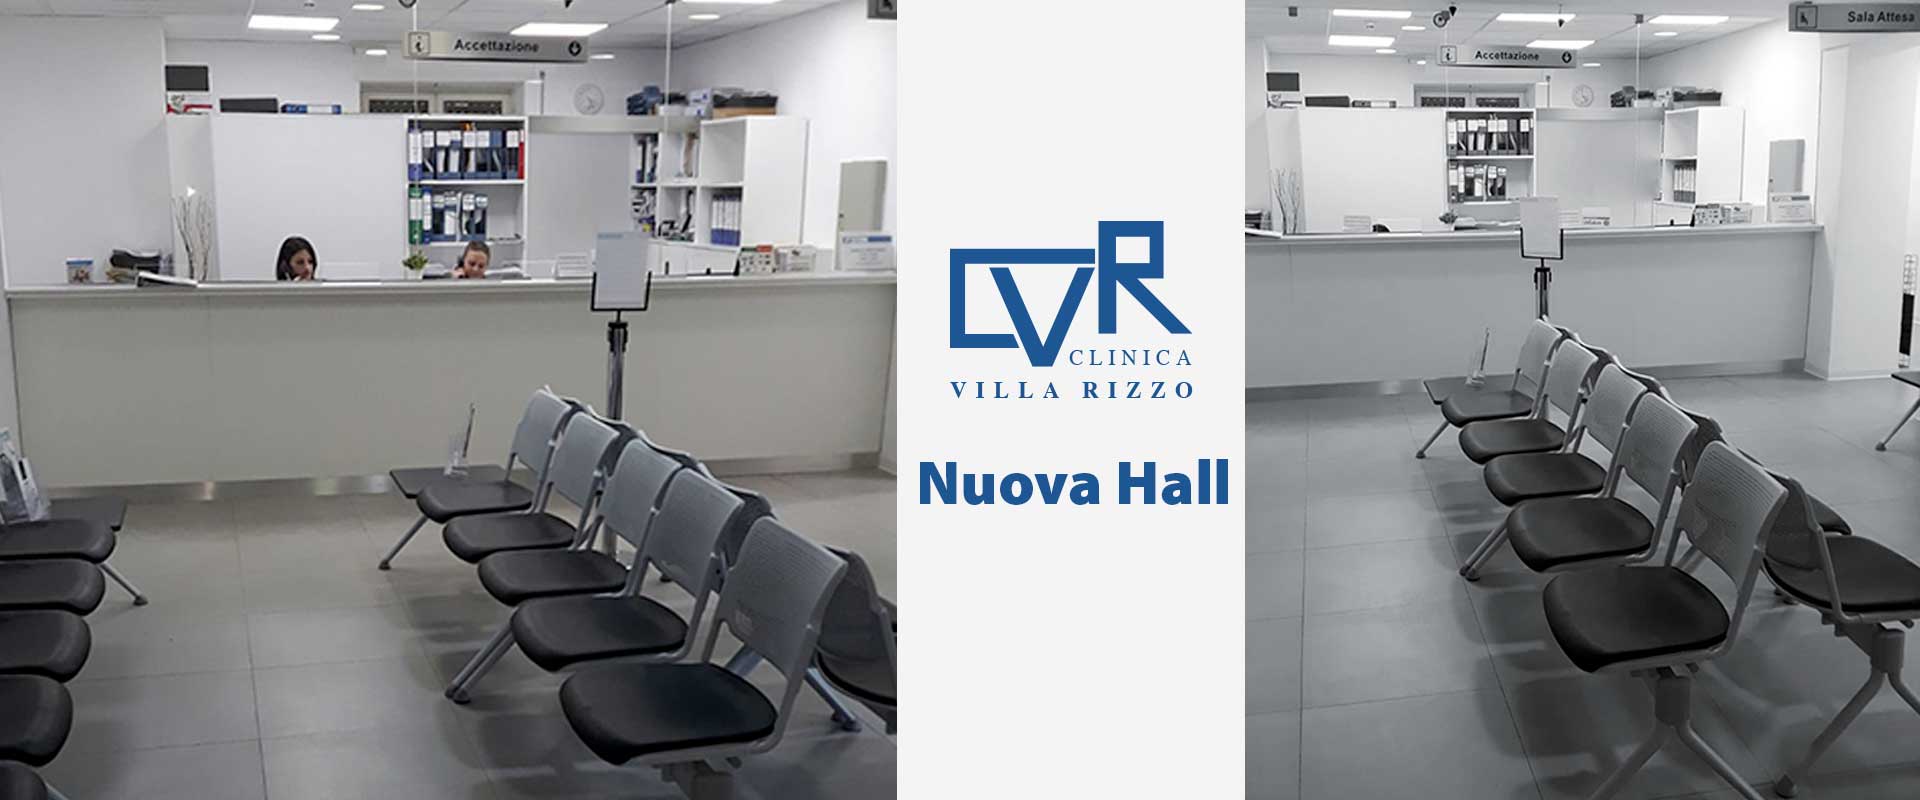 Clinica Villa Rizzo